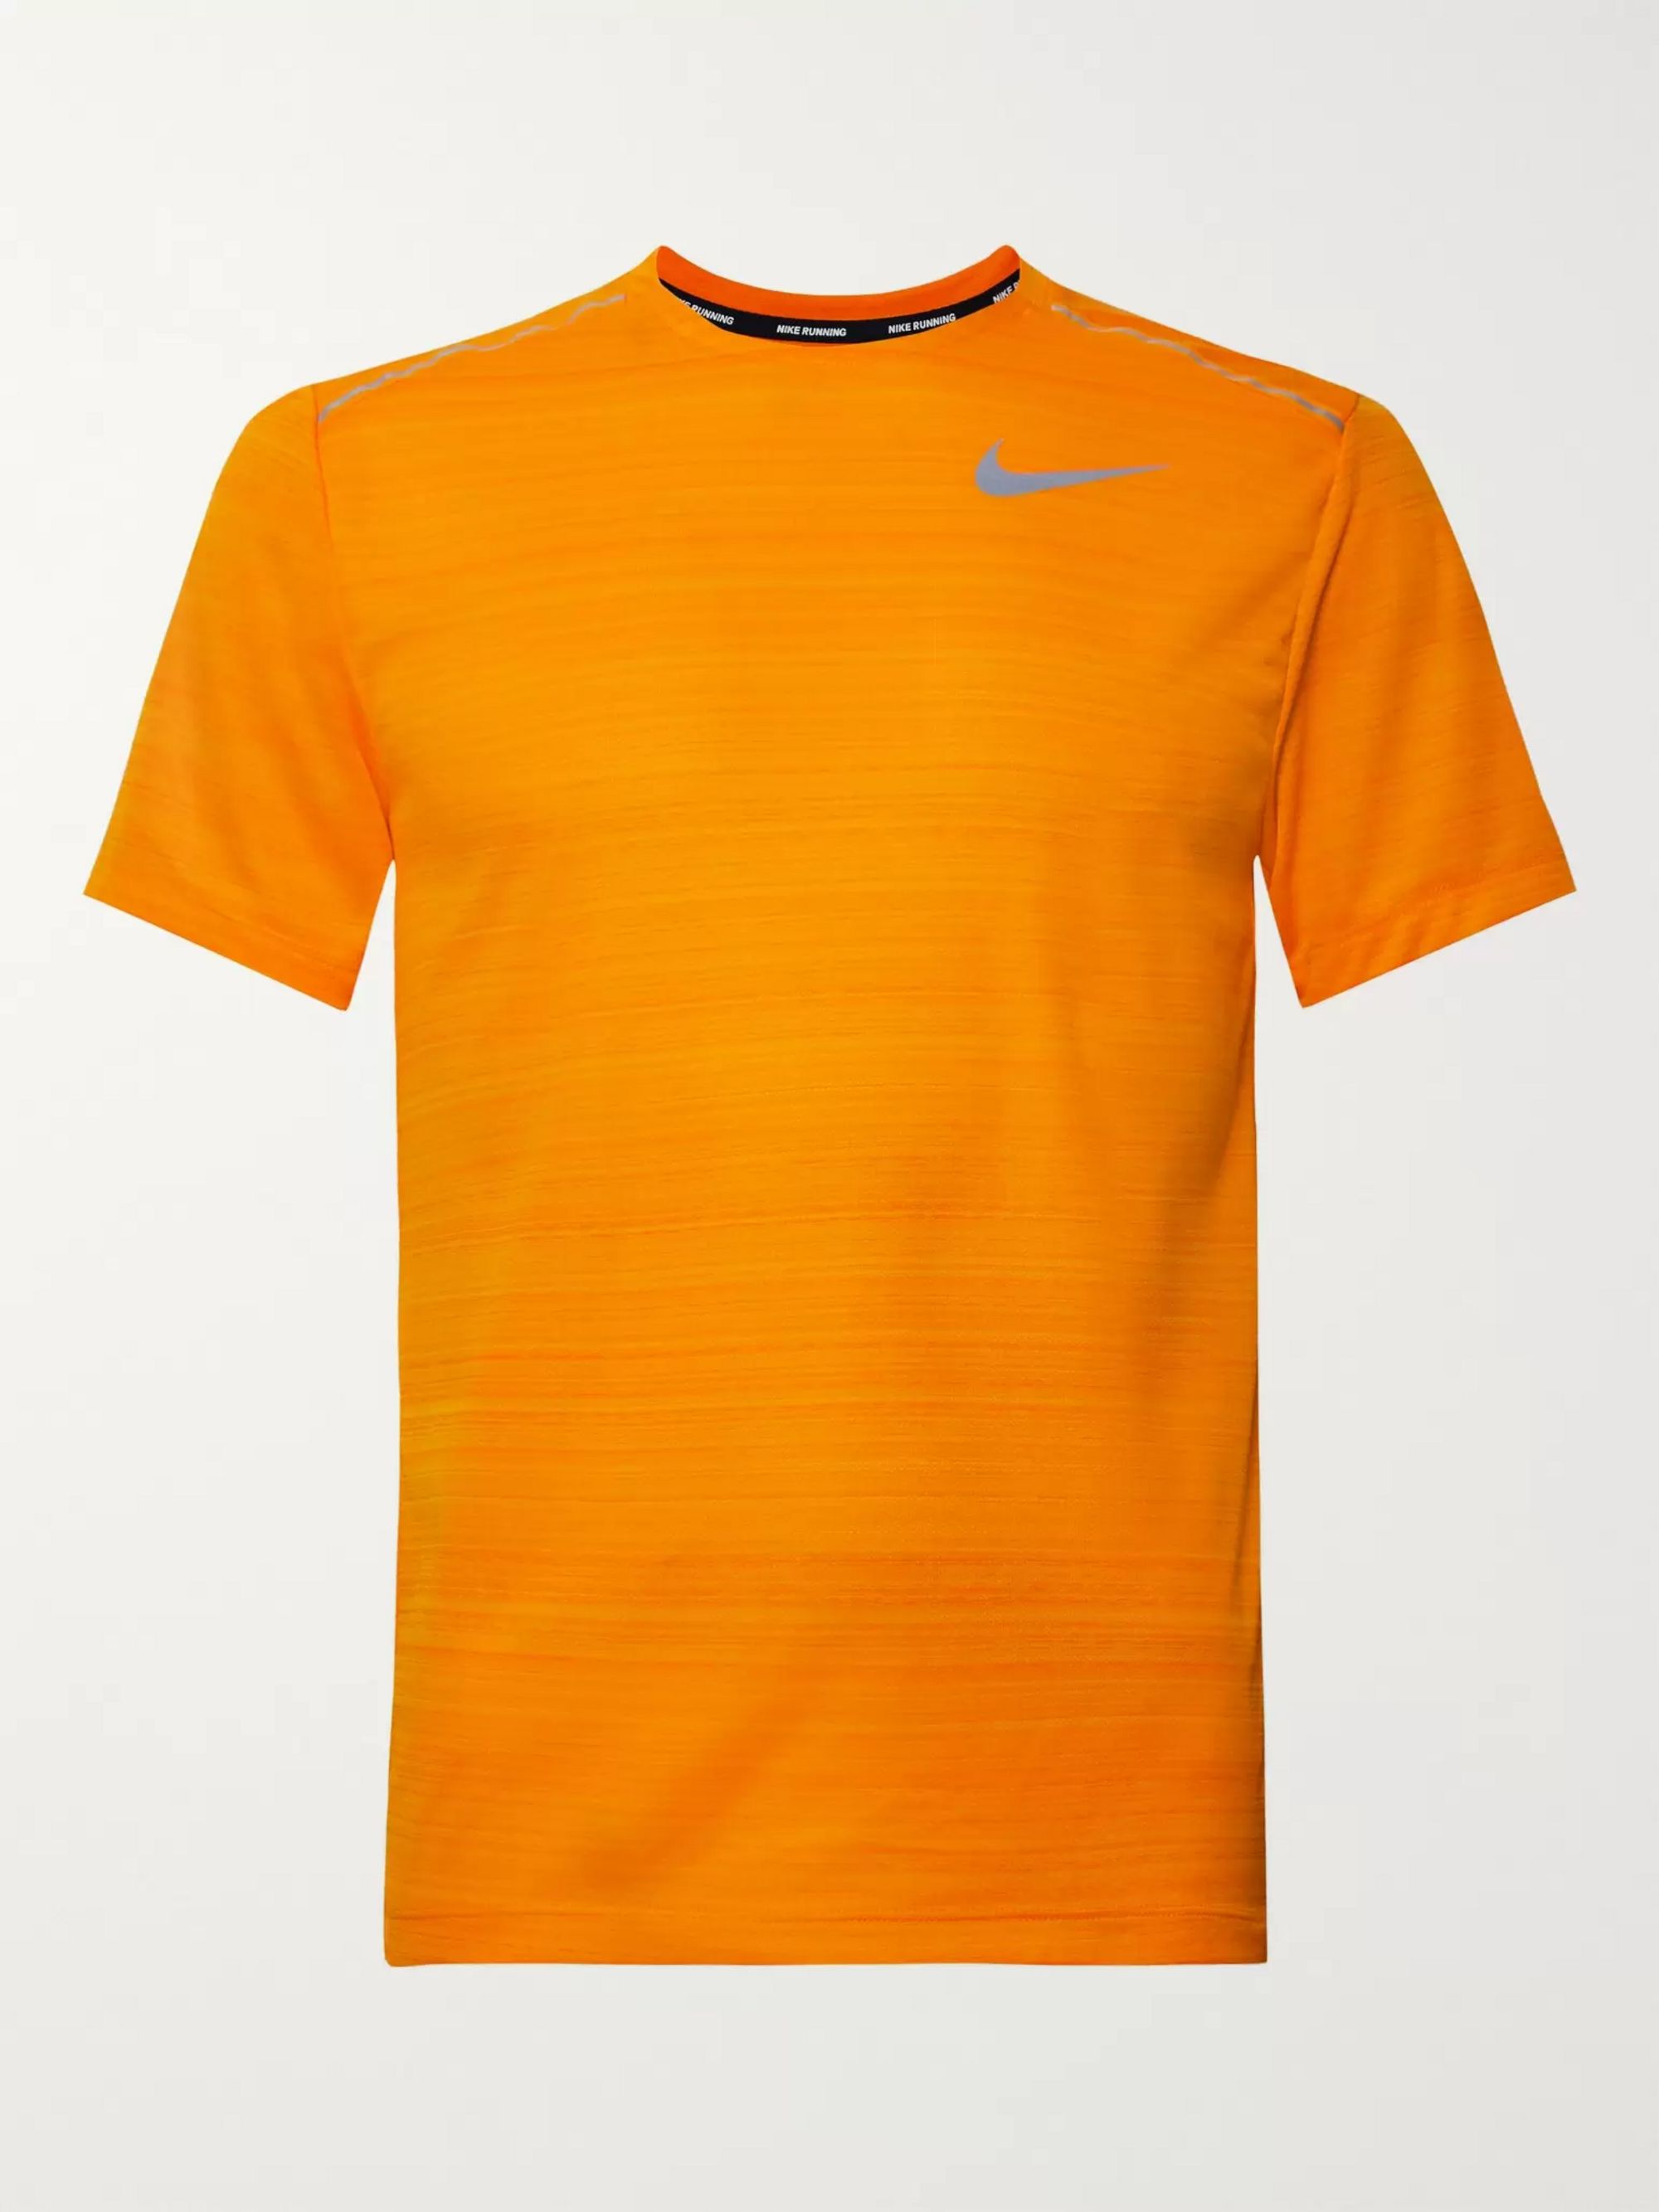 nike orange miler t shirt